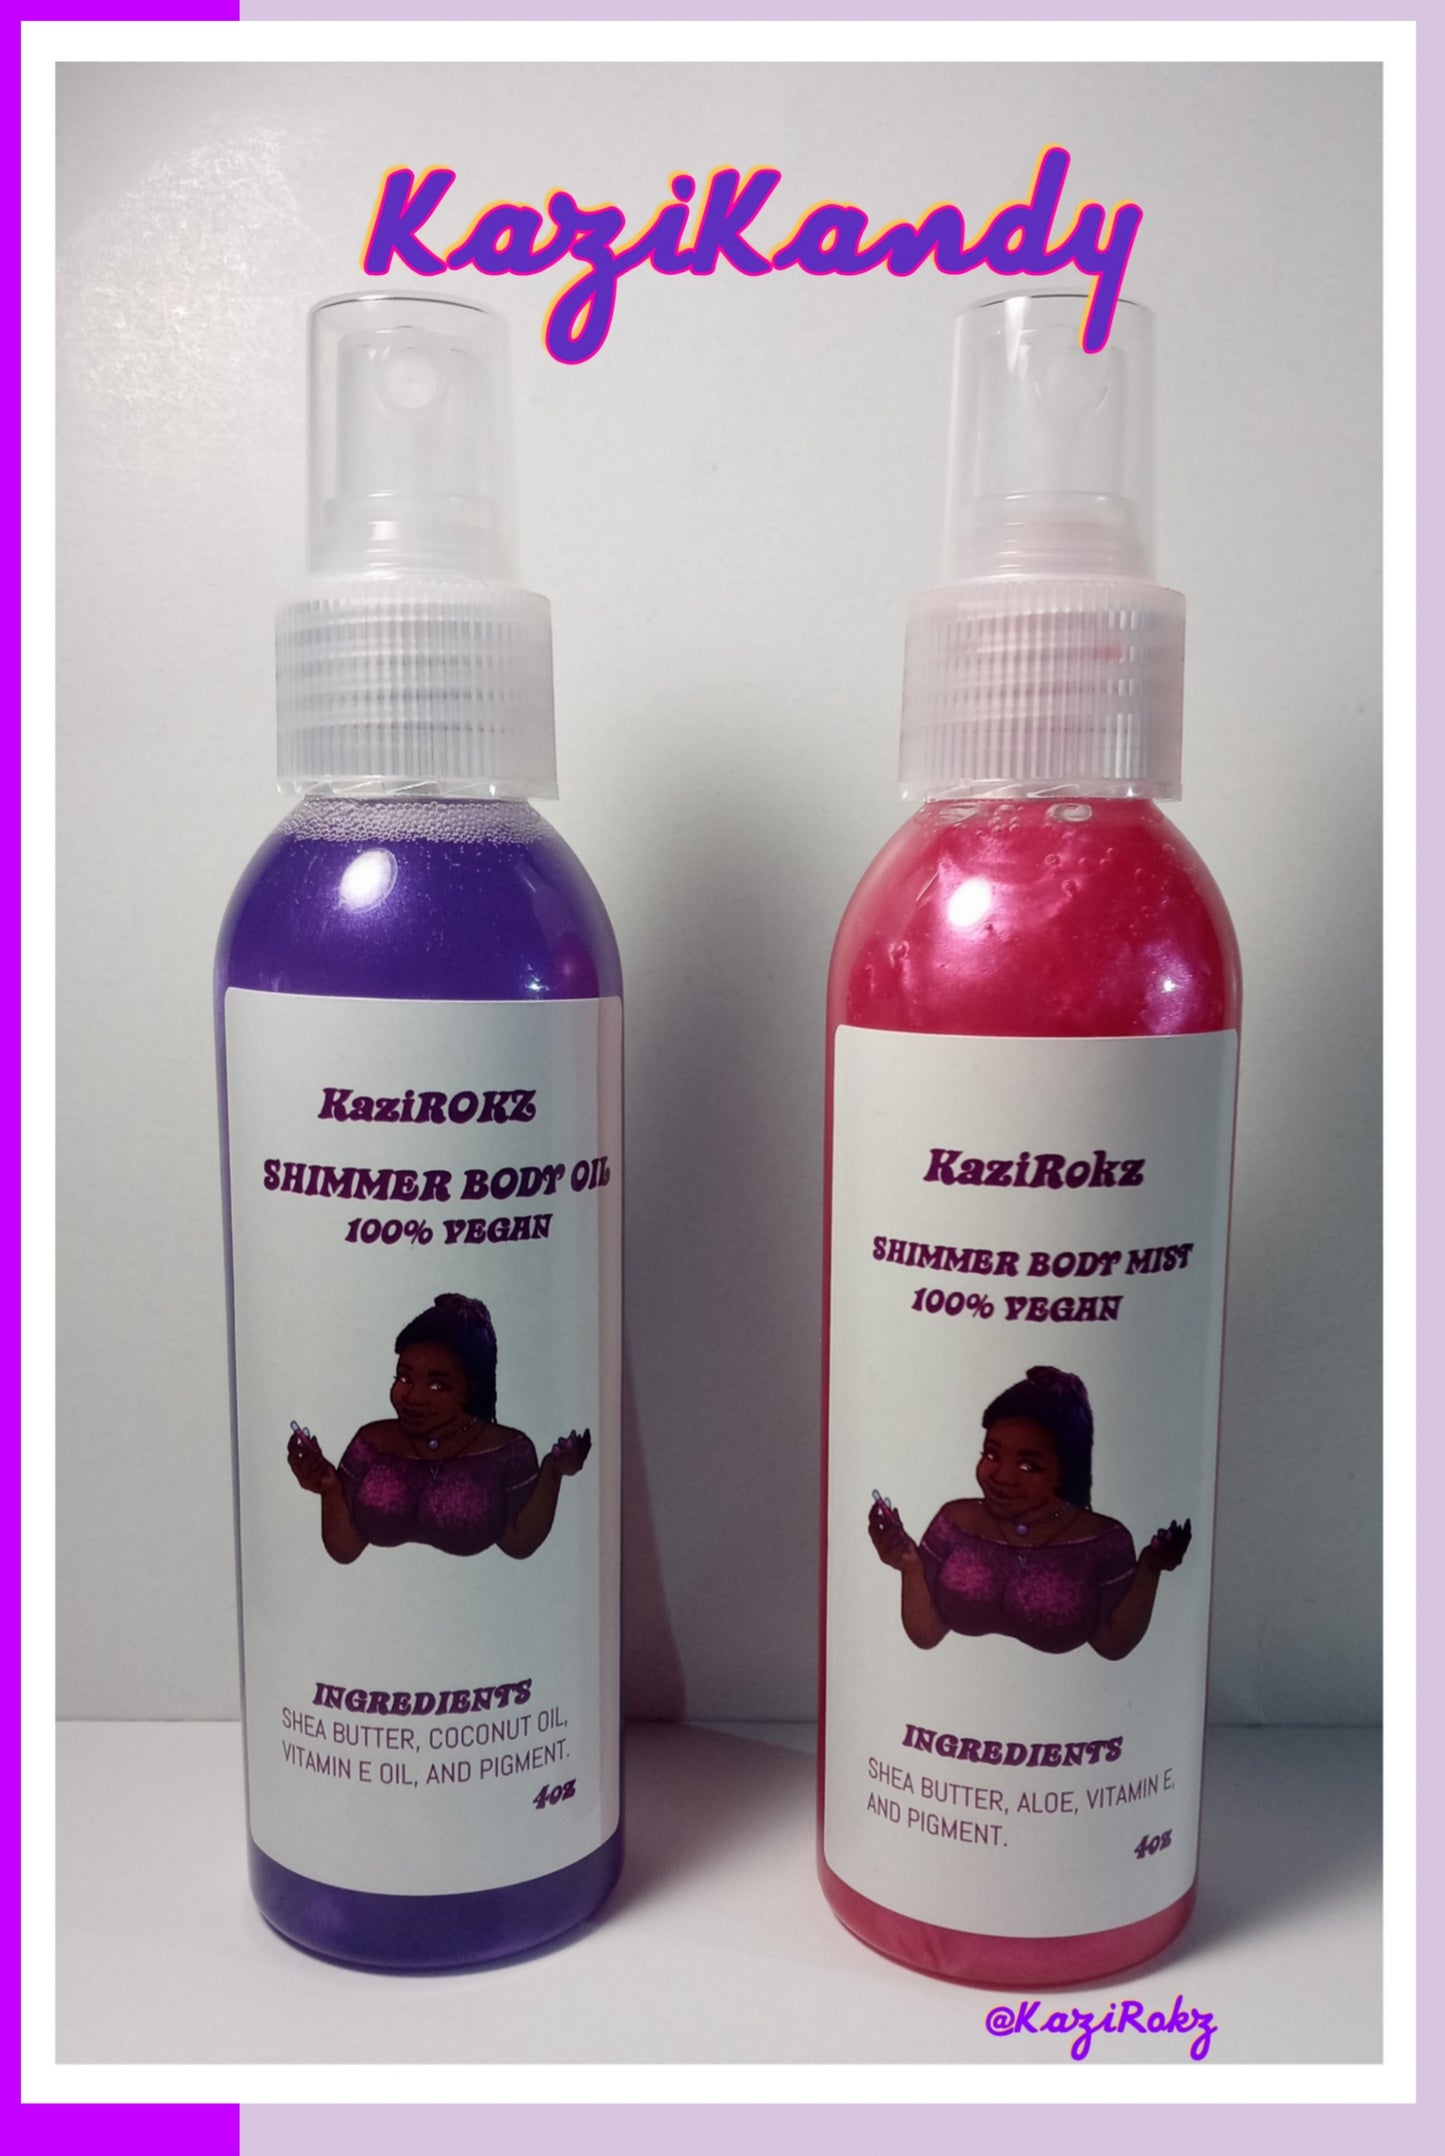 KaziKandy Vegan Skincare Duo (Shimmer body oil & Shimmer body mist)